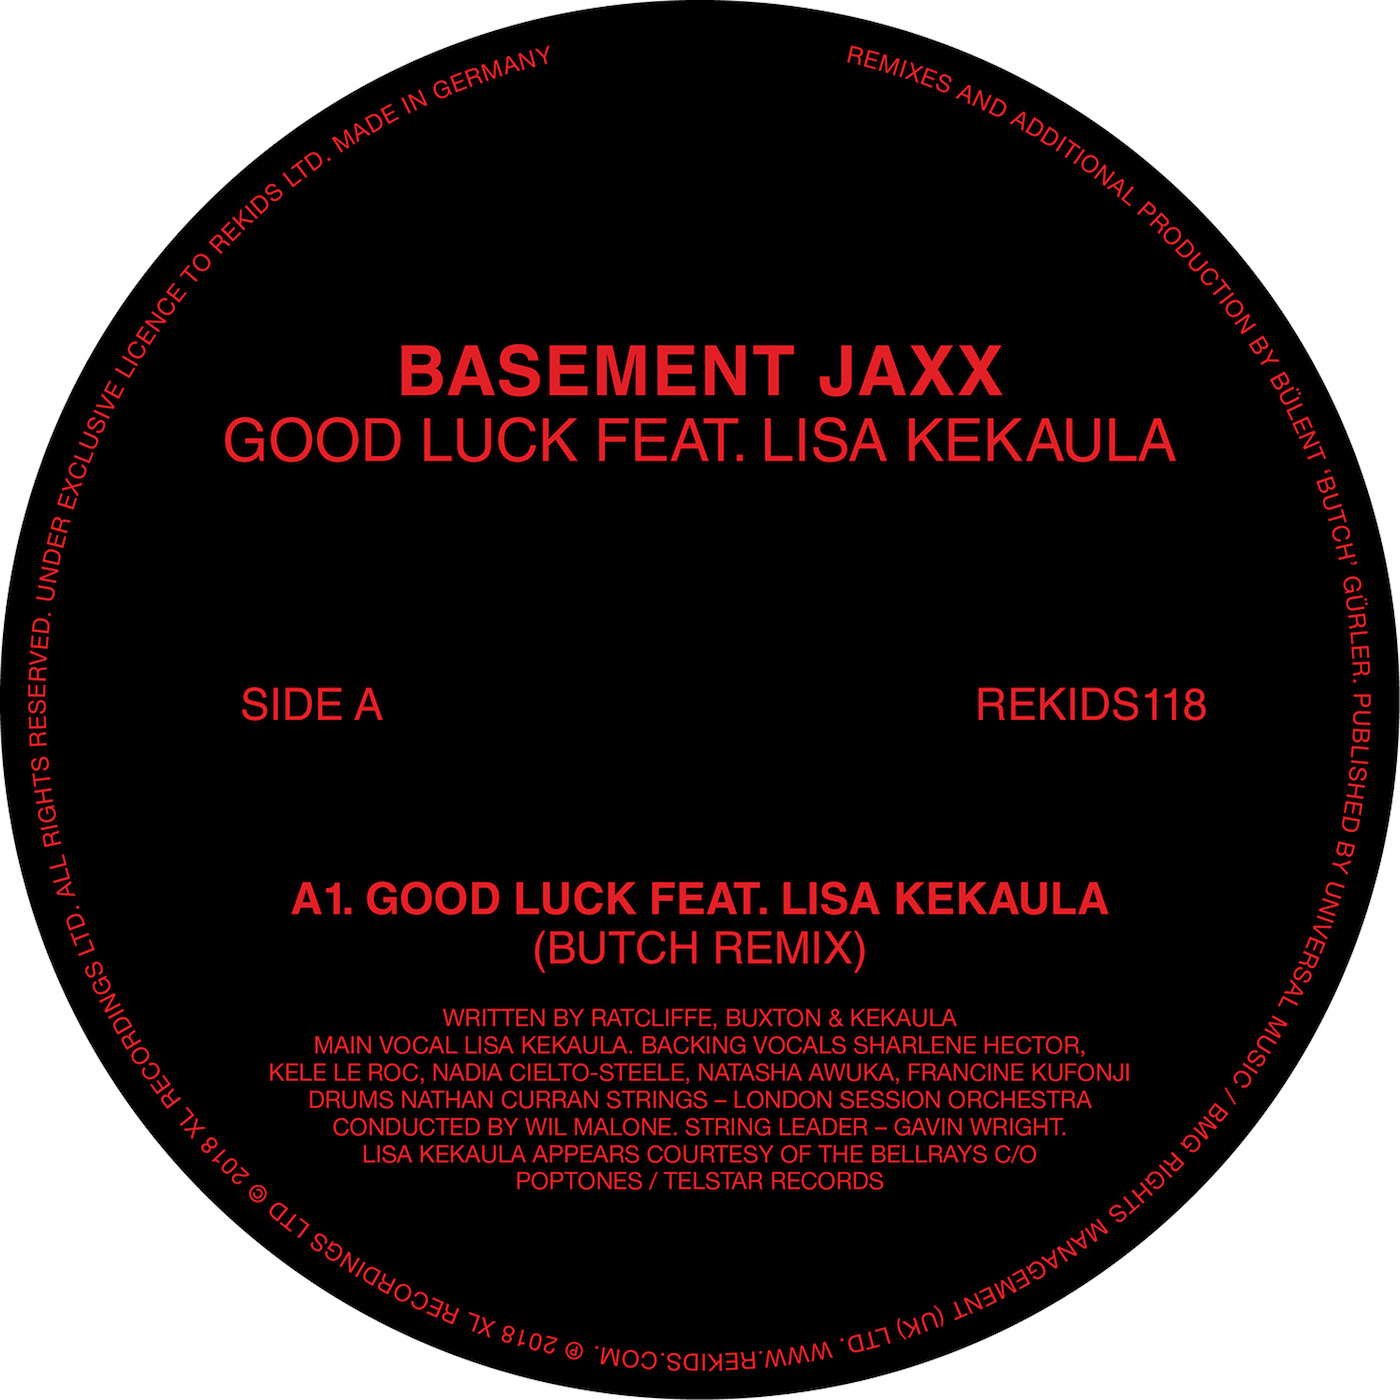 Basement Jaxx - Good Luck feat. Lisa Kekaula (Butch Remixes) / Rekids